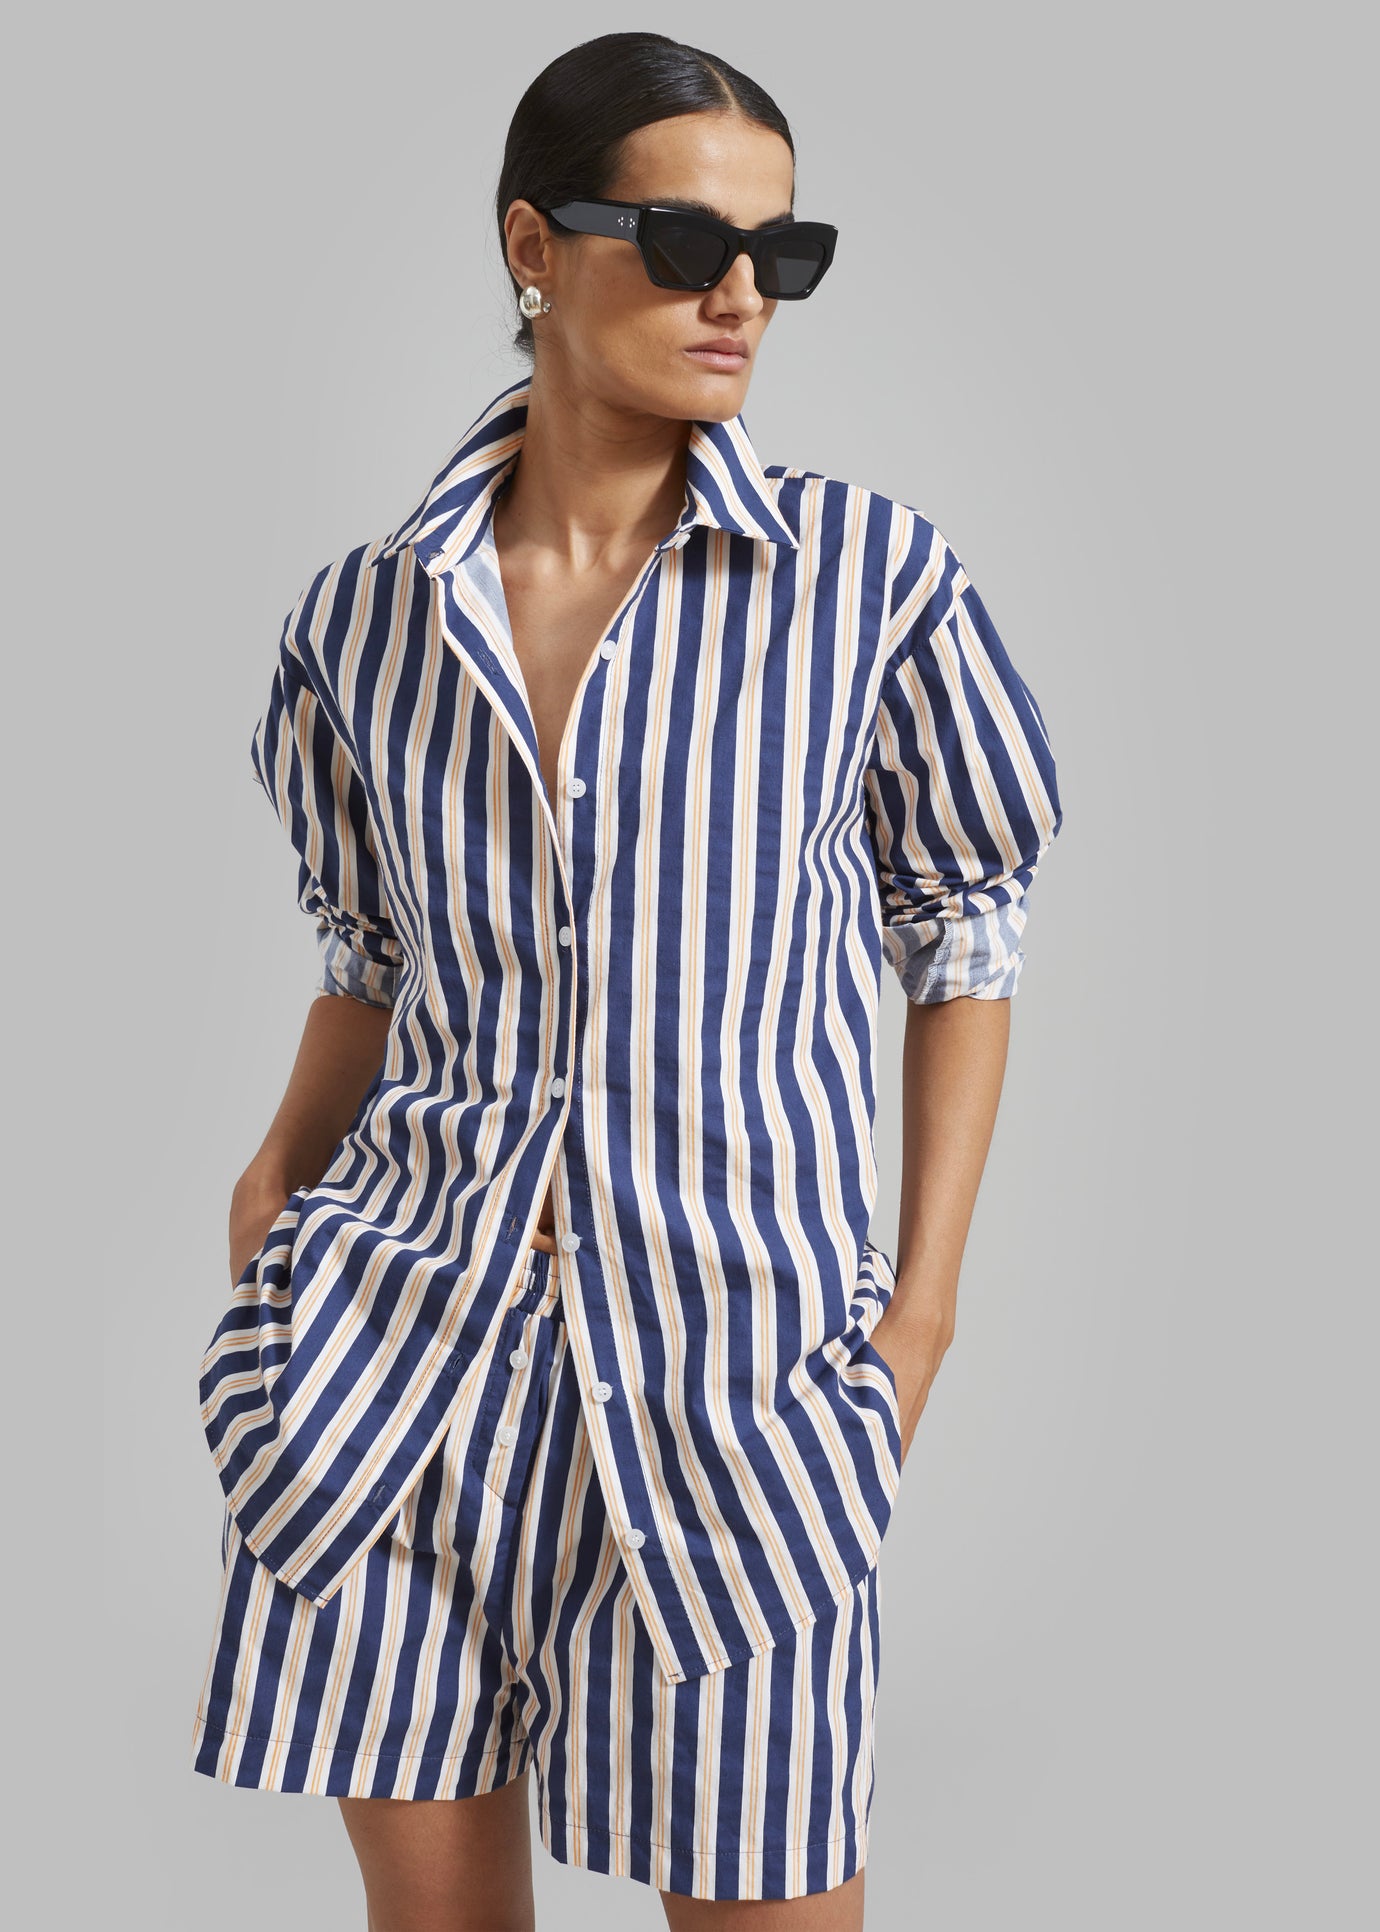 Juno Cotton Shirt - Navy Stripe - 1